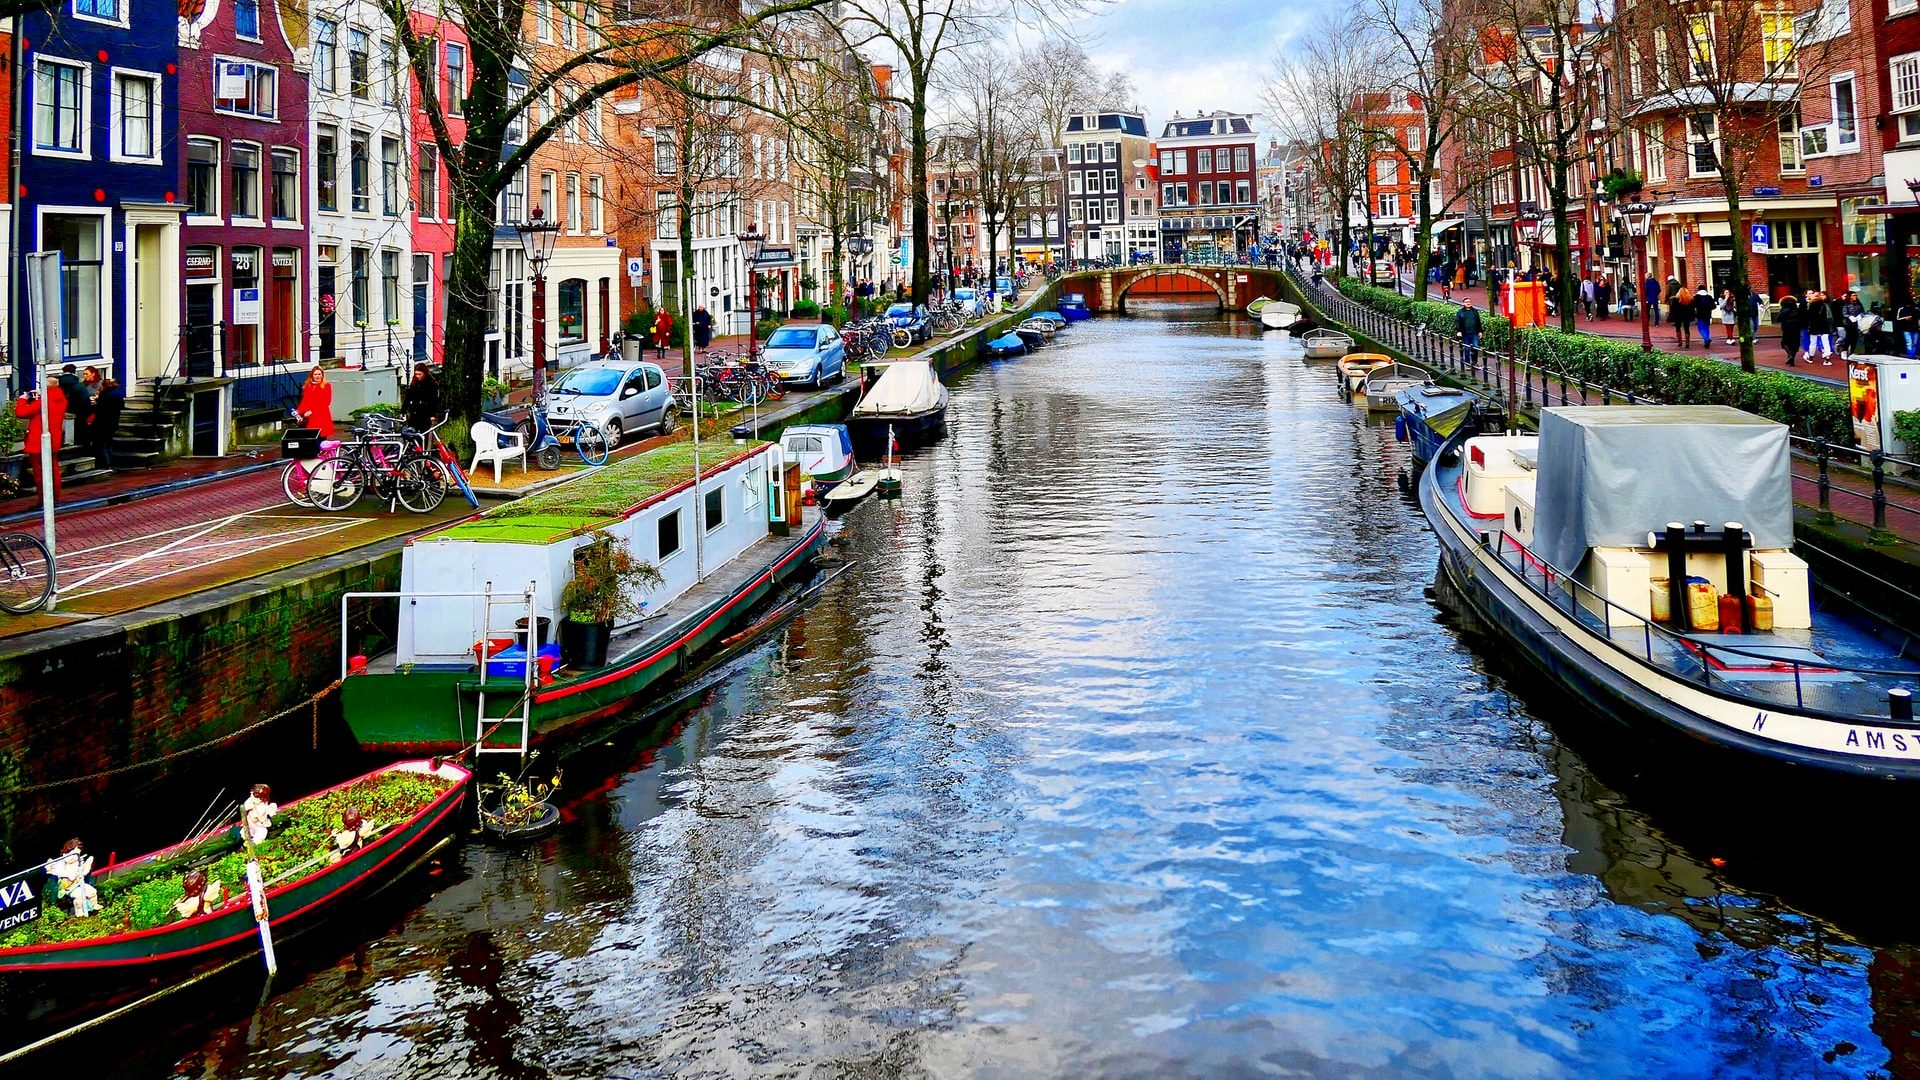 Sede di canali, splendide case e chiese, attrazioni, mercati e musei, il centro città è la migliore posizione per i turisti ad Amsterdam